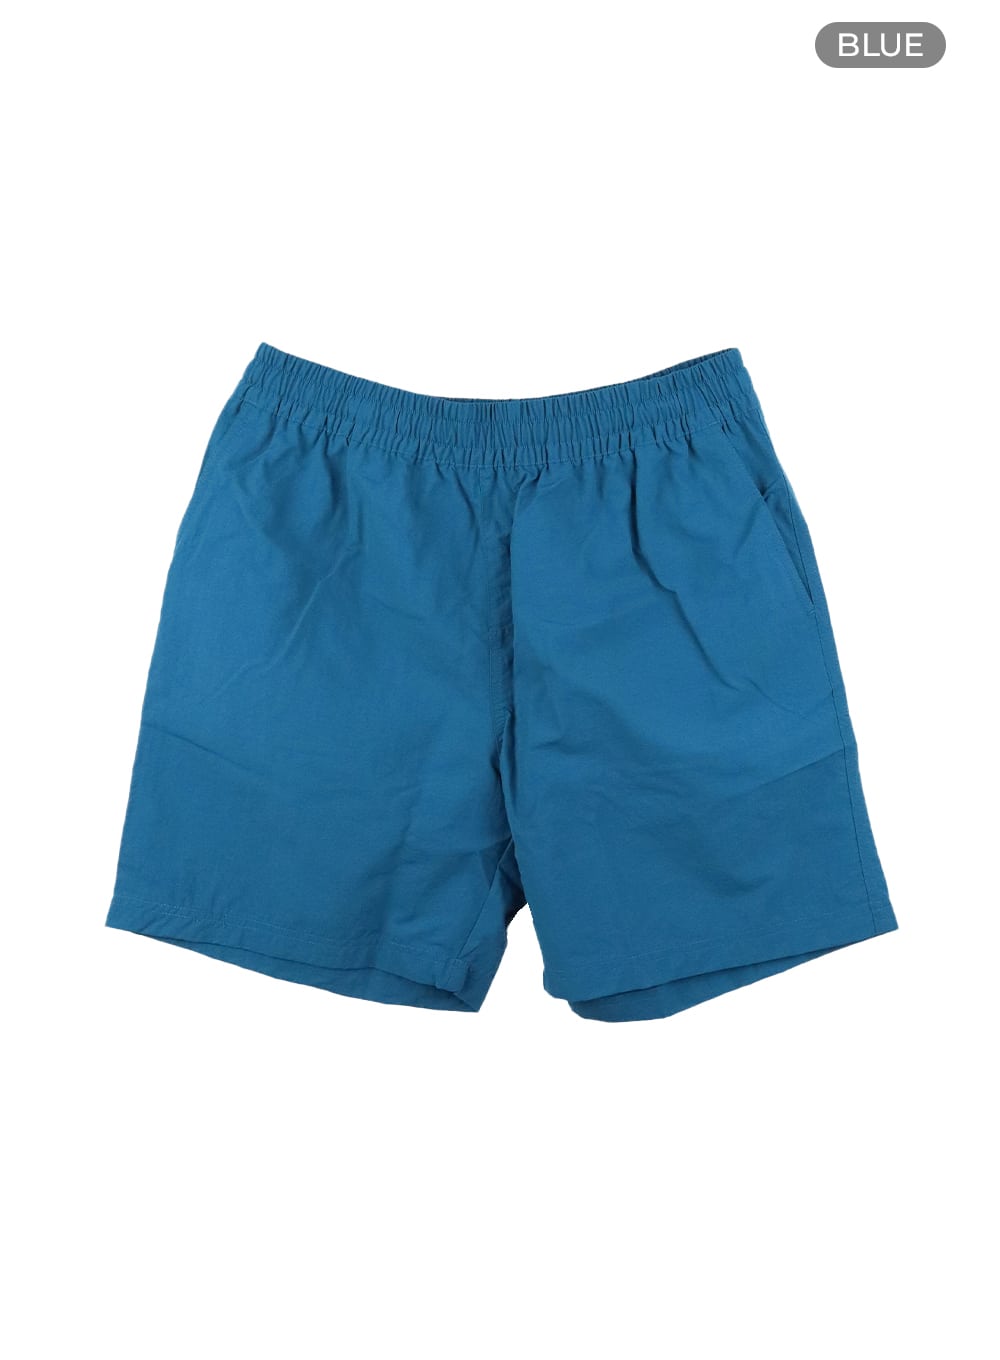 mens-casual-nylon-shorts-ia402 / Blue